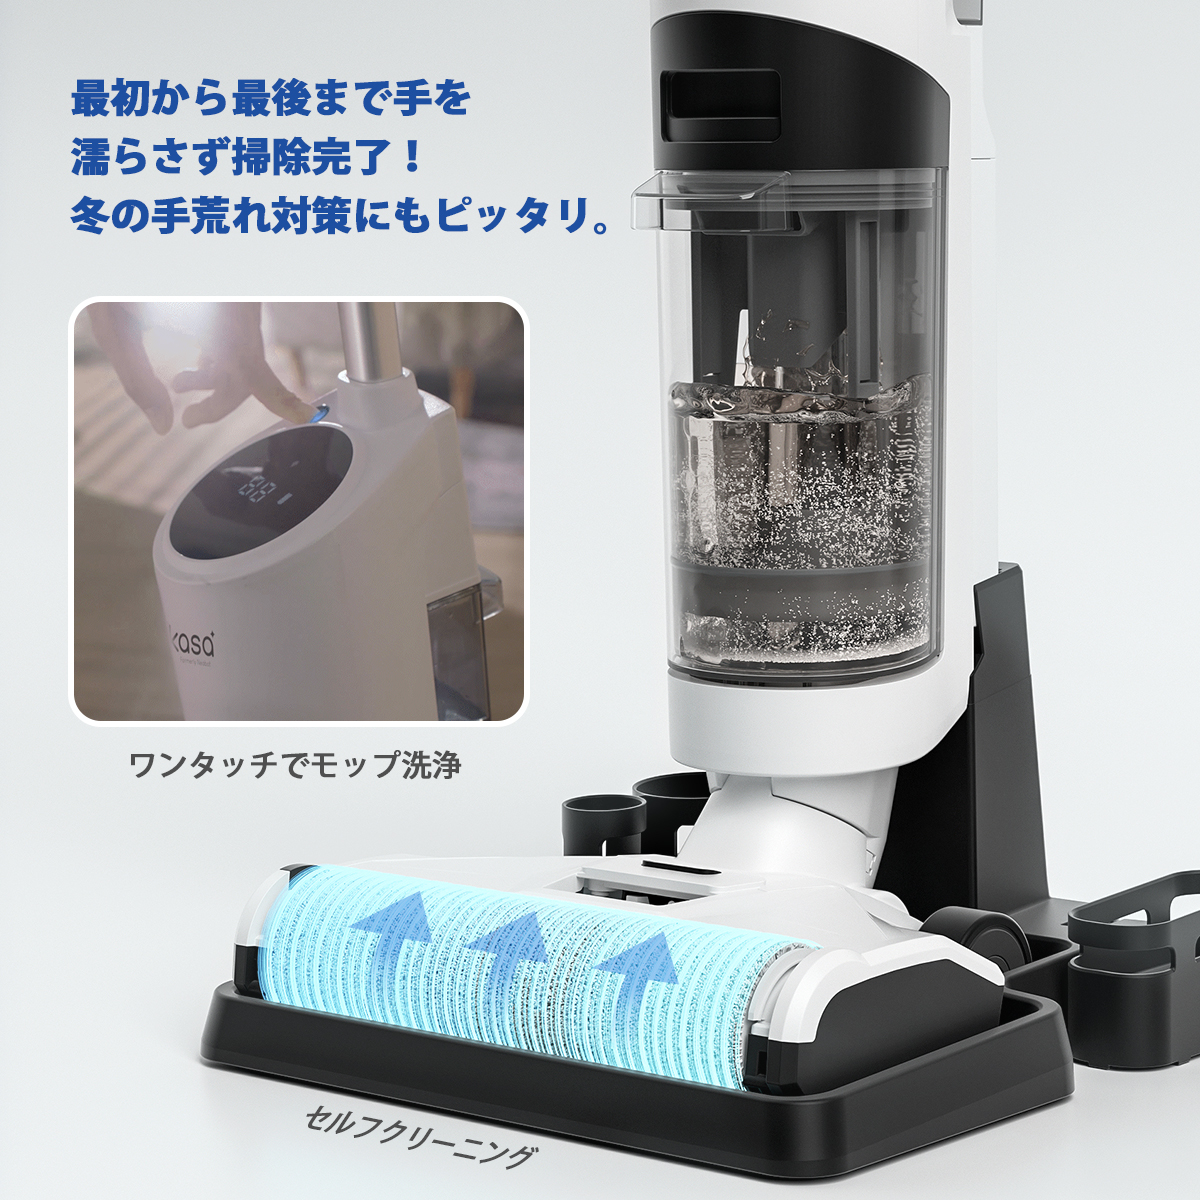 Neakasa Power scrub II コードレス掃除機 自走式ヘッド 強力吸引 水